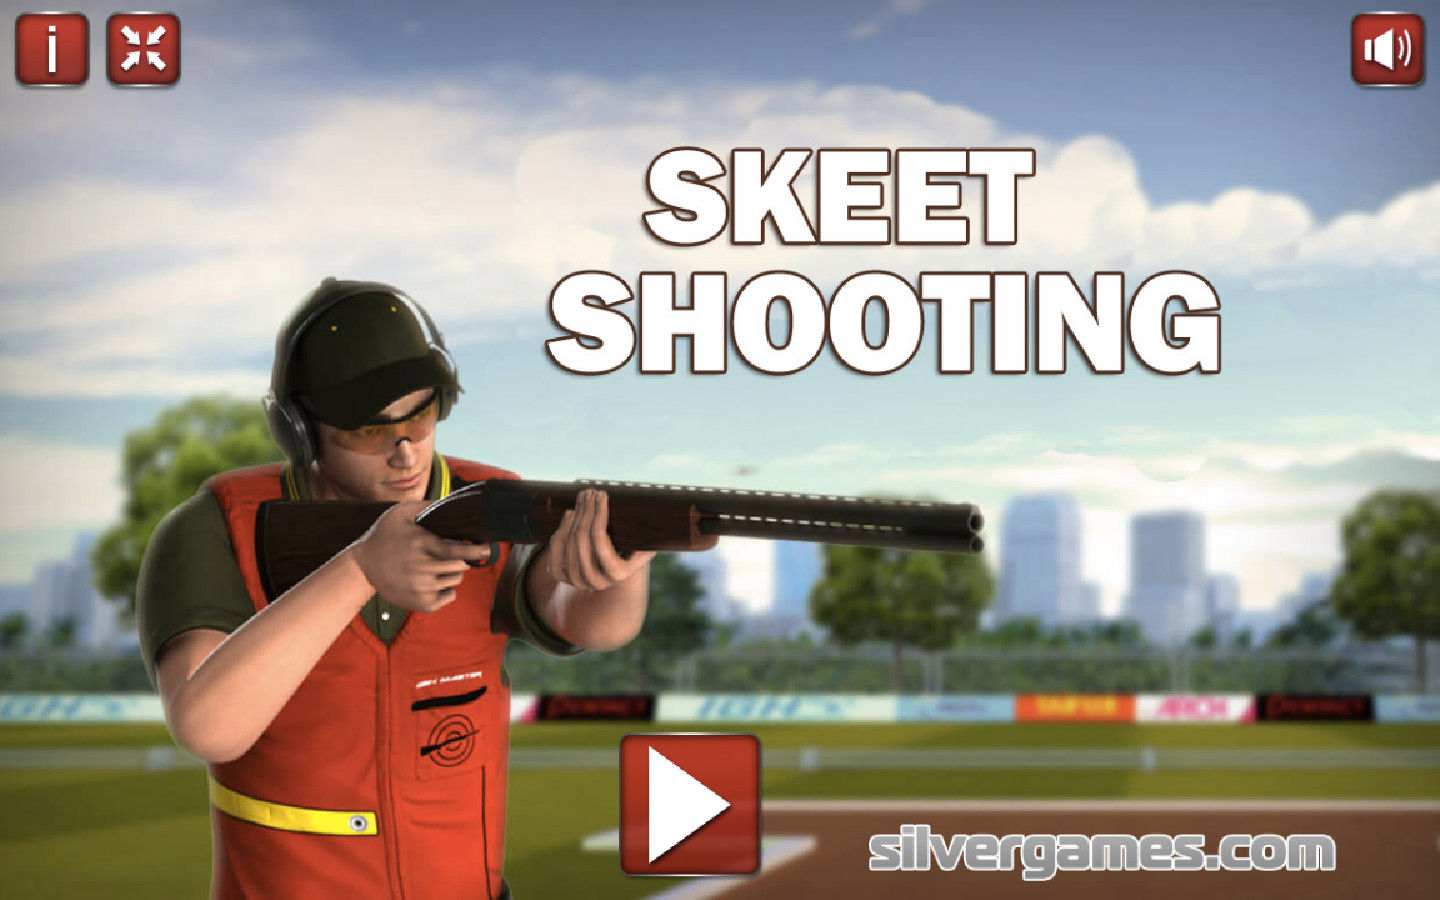 Skeet Shooting